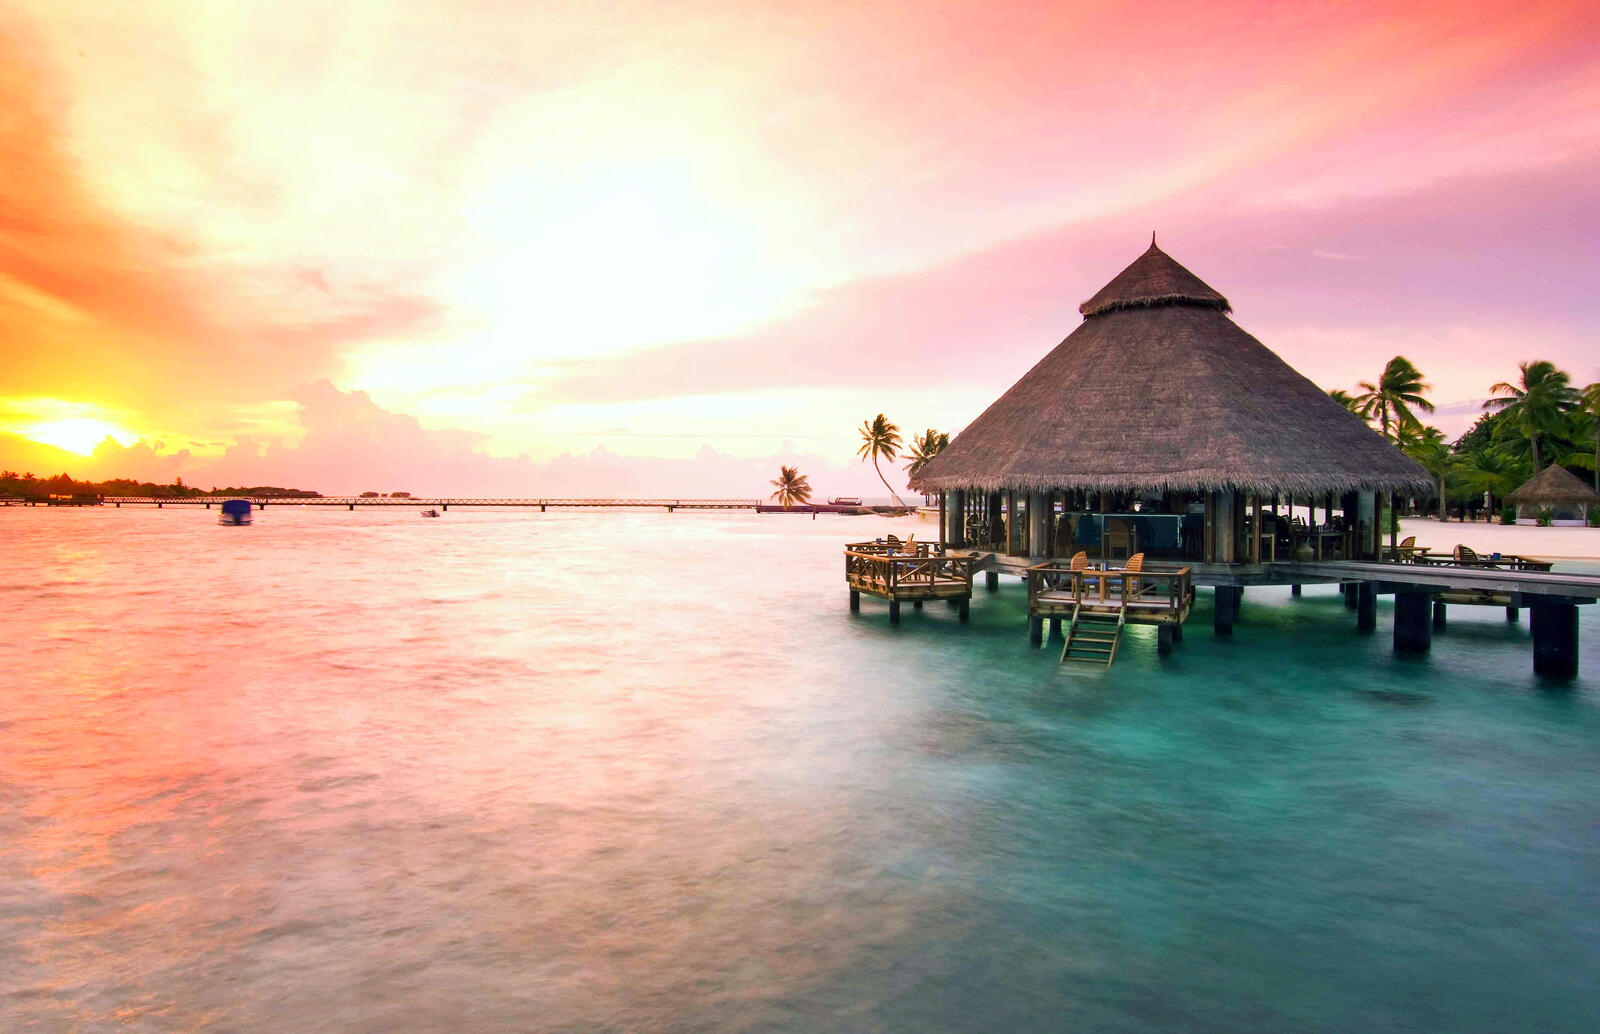 Обои Мальдивы курорт остров на рабочий стол